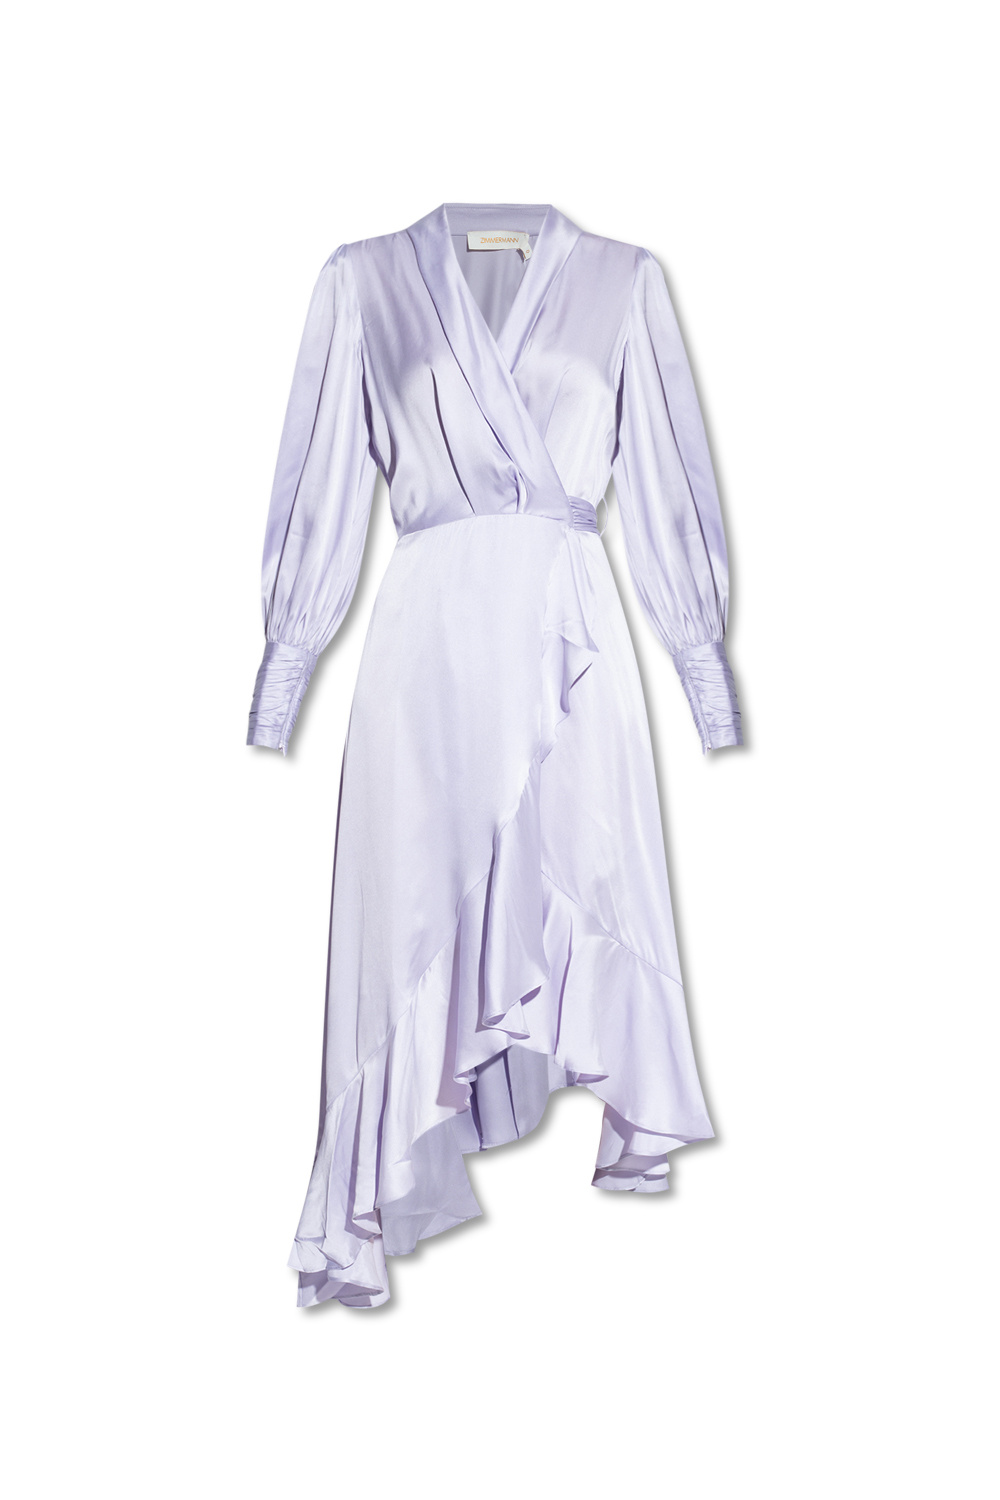 ESPRIT - Jersey camisole top, 100% cotton at our online shop